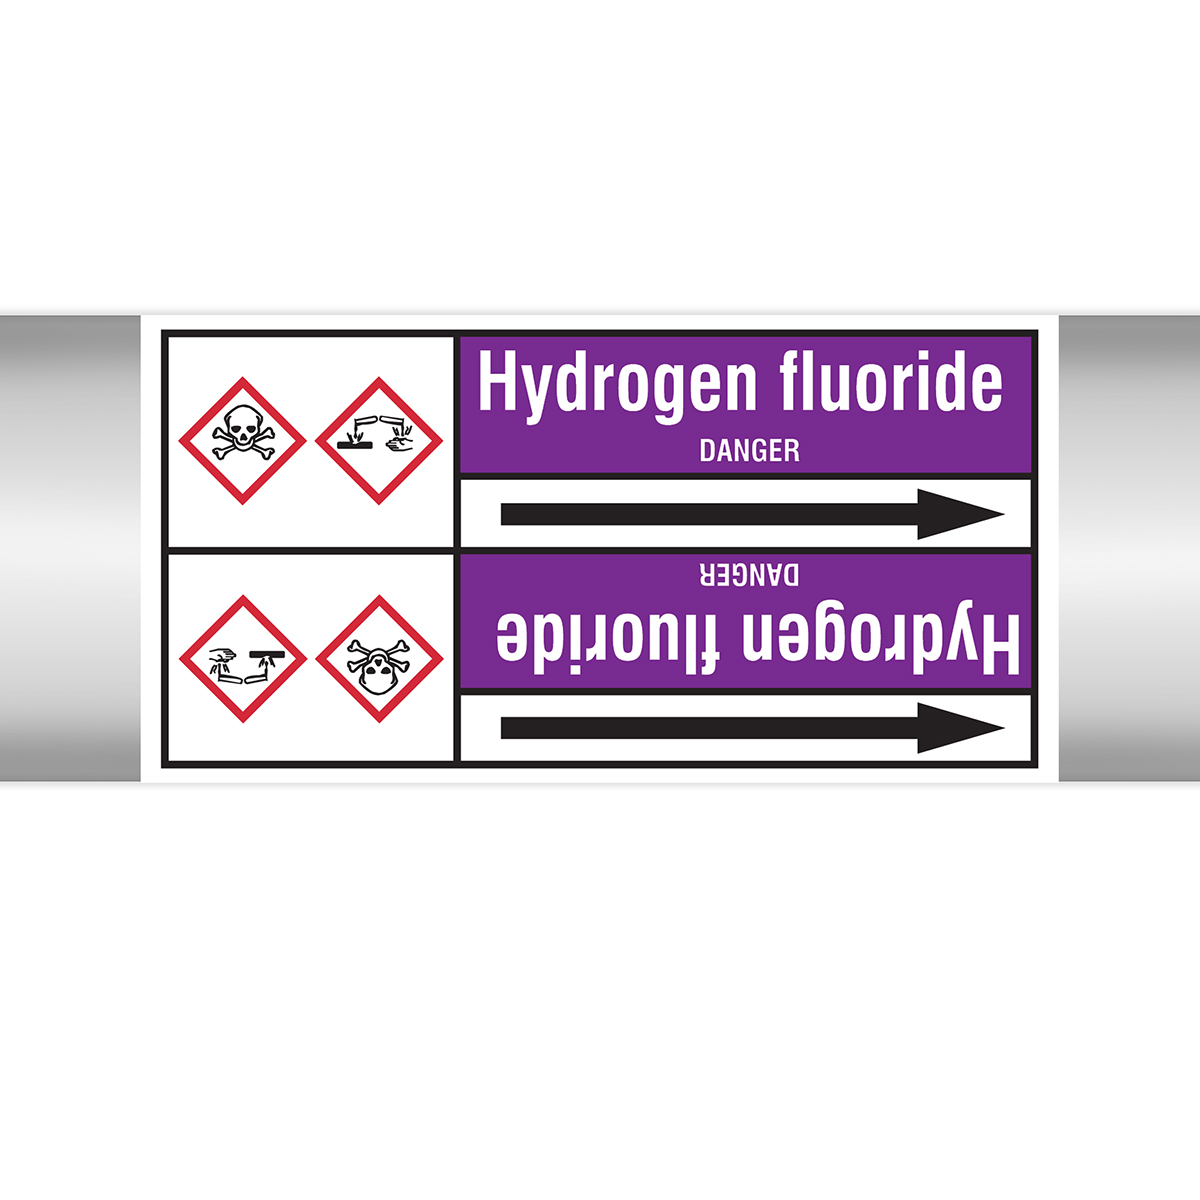 Roll Form Type 2 - Hydrogen Fluoride